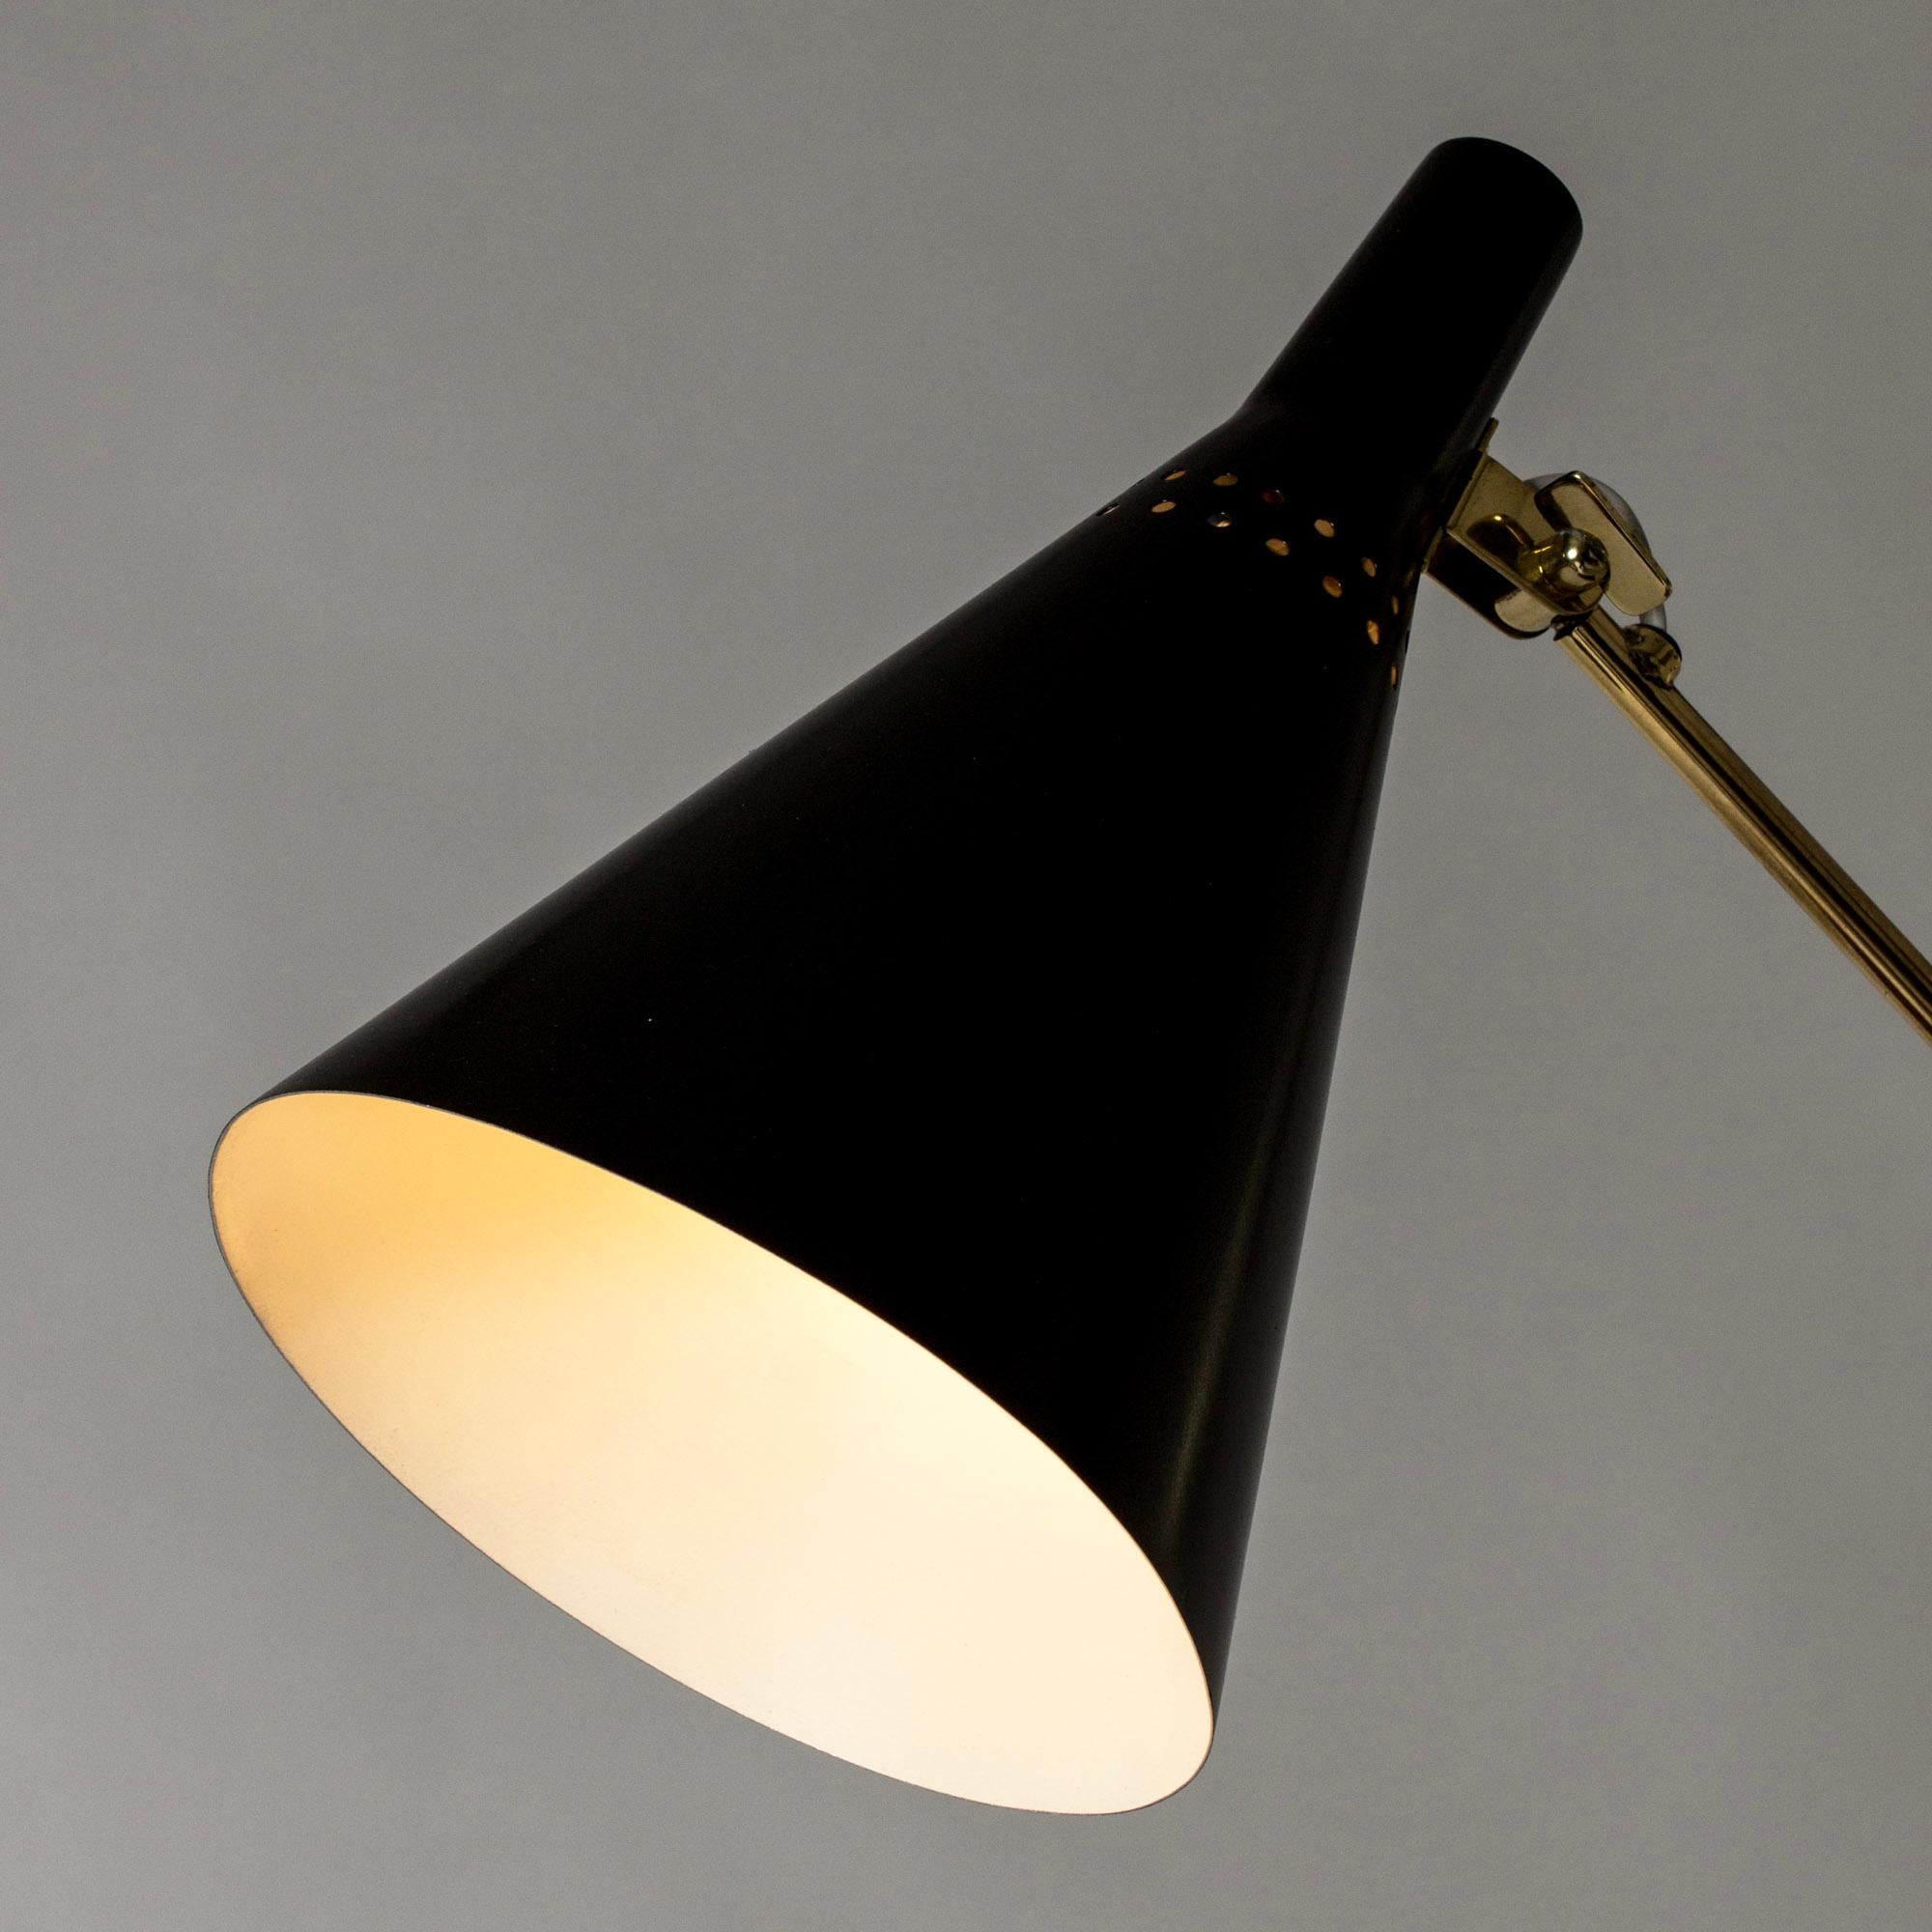 Finnish Midcentury Brass Floor Lamp by Tapio Wirkkala for Idman Oy